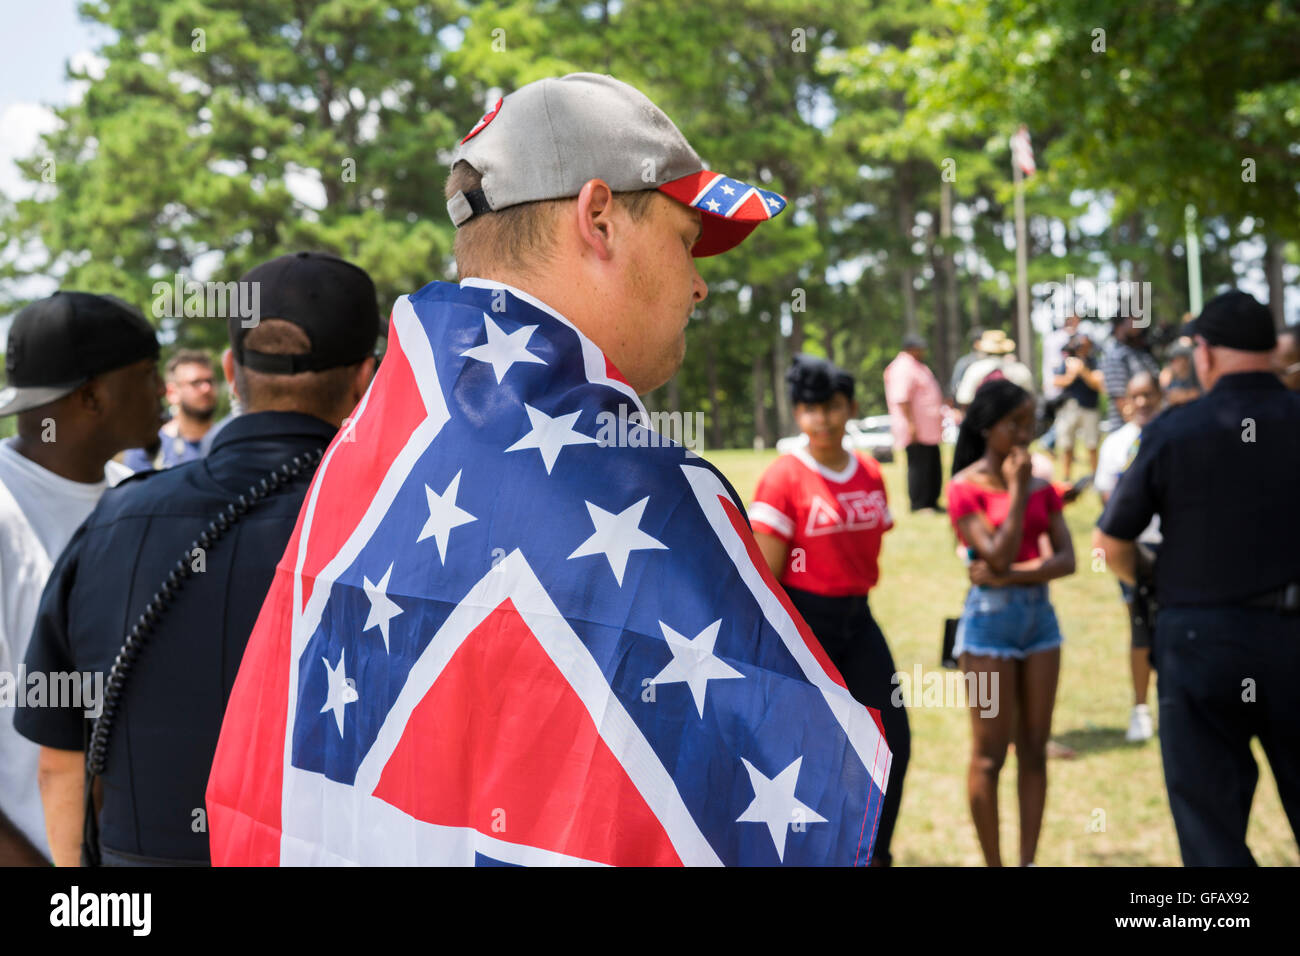 Joshua Marsh, ha dimostrato fino al Rally in Tupelo, Sig.ra per mostrare il loro sostegno per la polizia indossando la bandiera confederate sul nero vive questione lato della barricata. Entrambi i lati hanno fatto del loro meglio per far sentire la loro voce. Credito: Tim Thompson/Alamy Live News Foto Stock